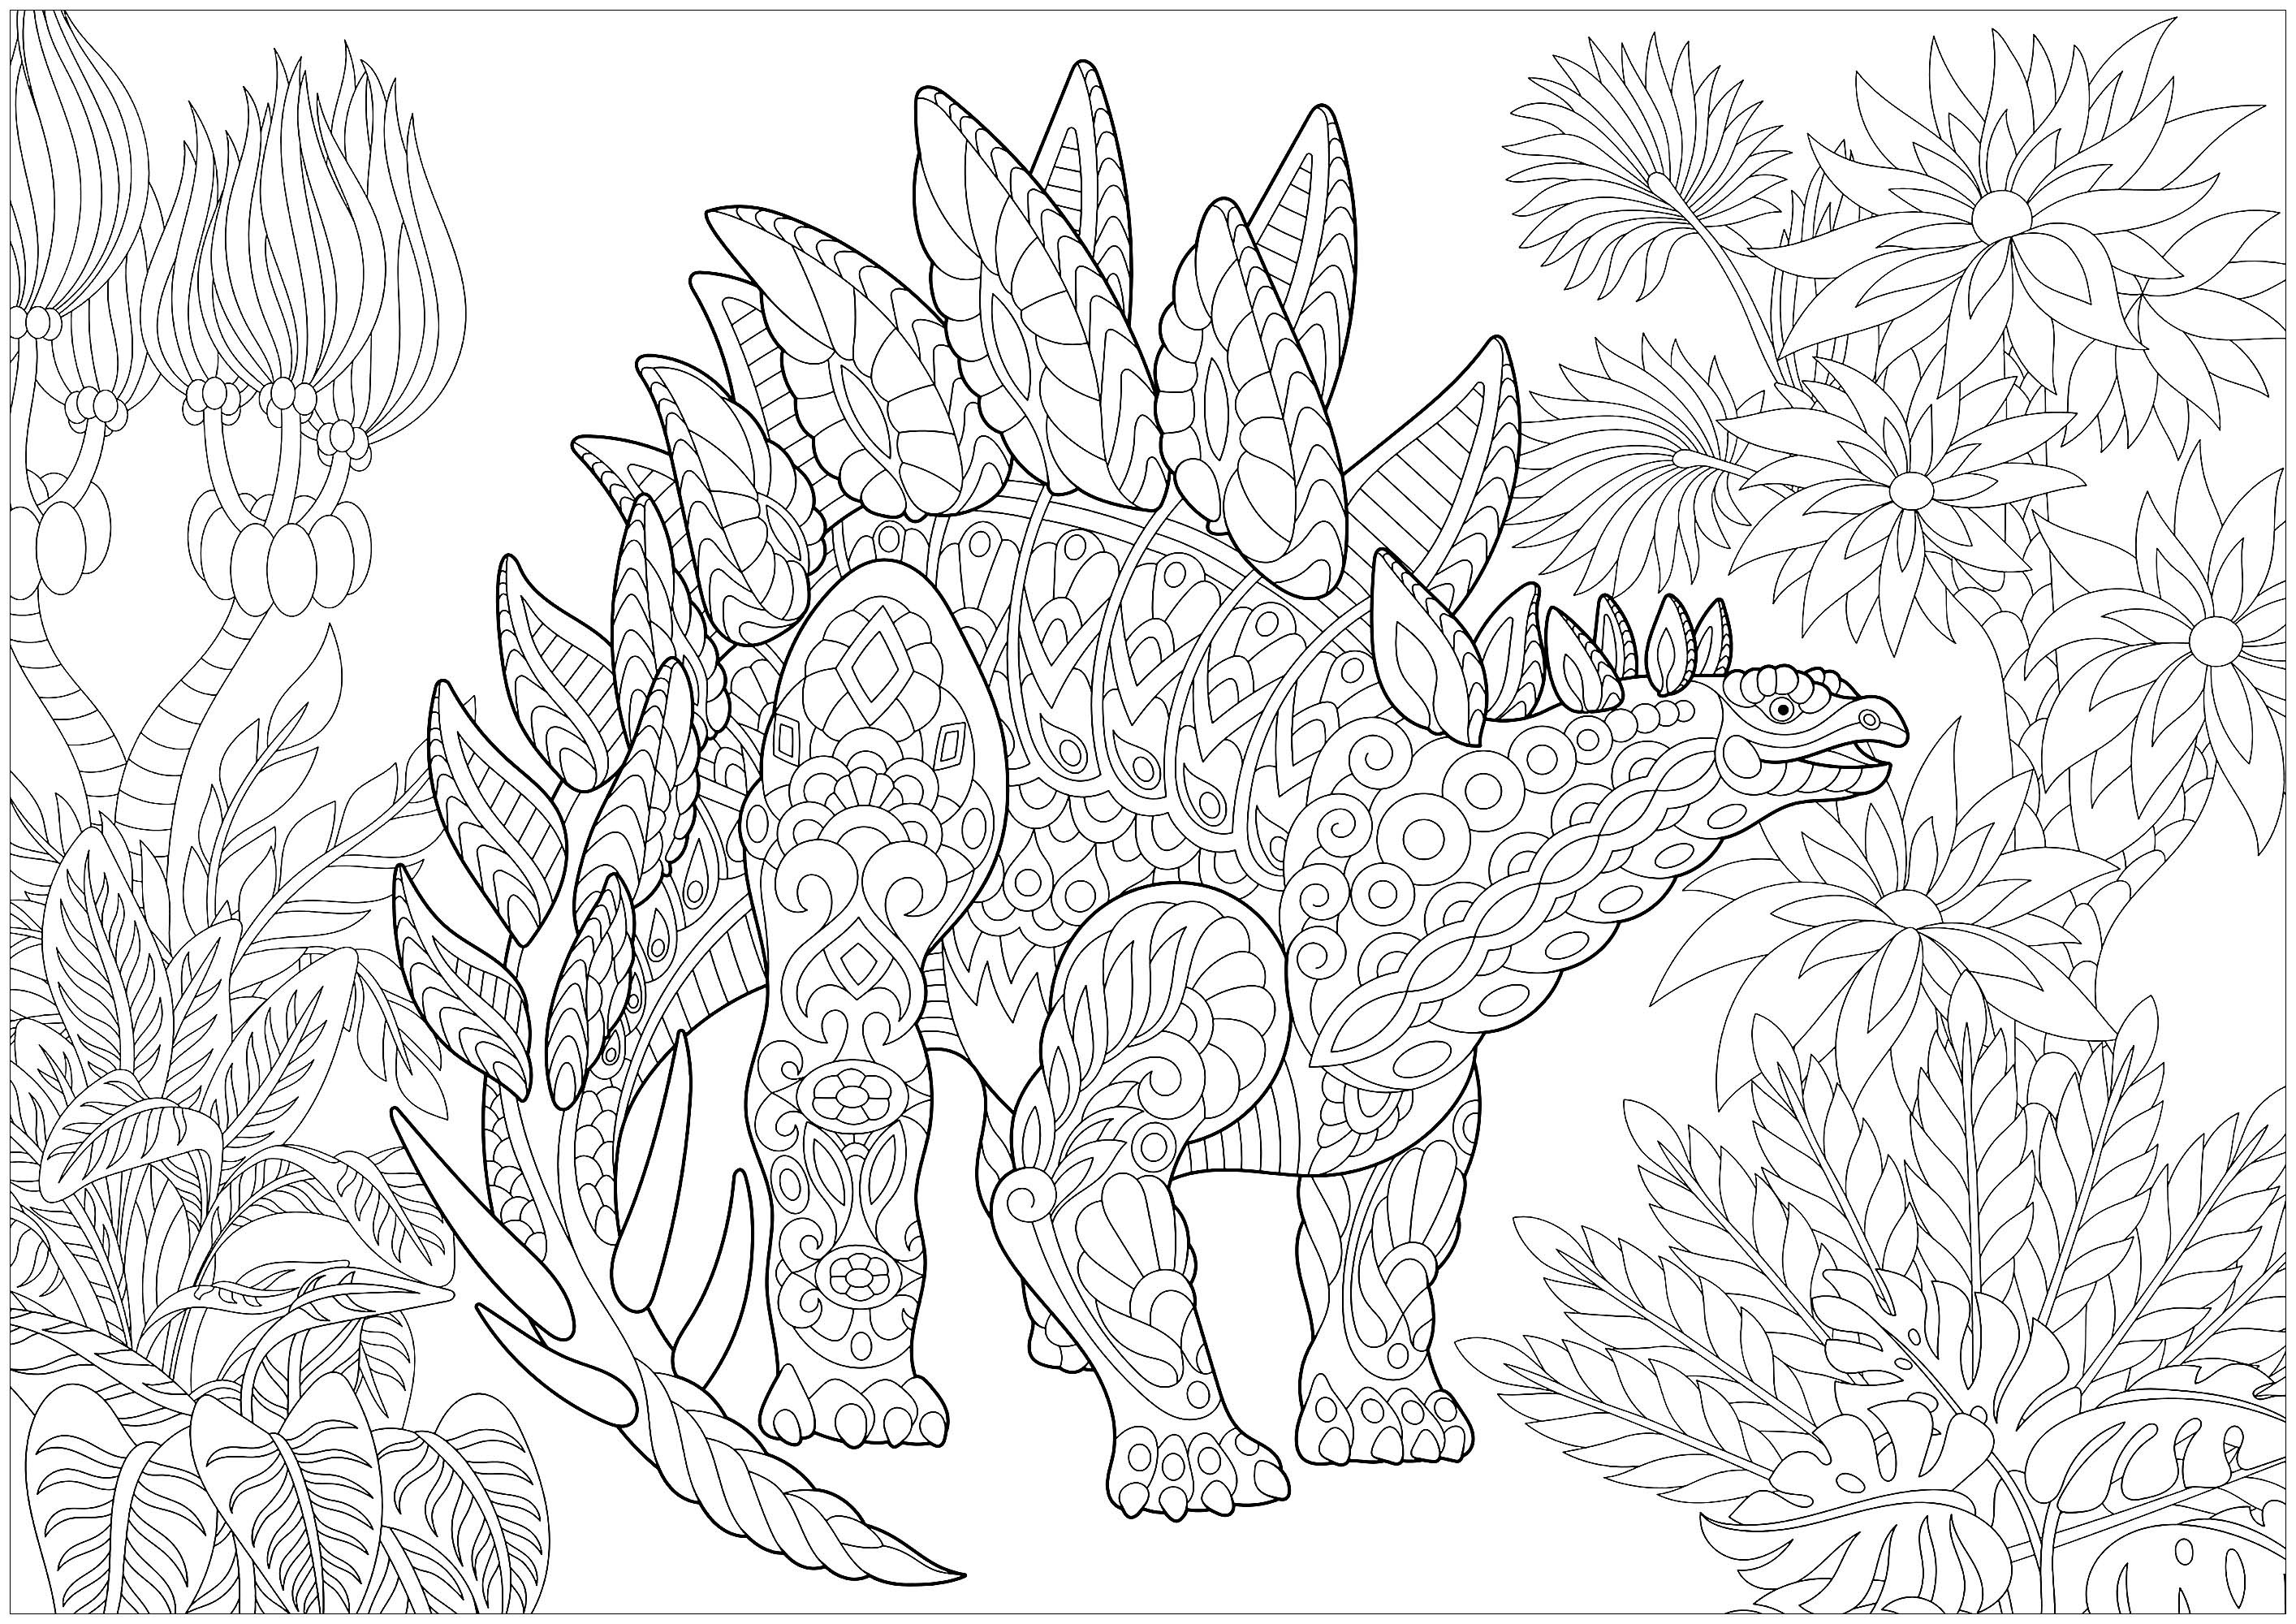 Desenho de Dinossauro para colorir  Desenhos para colorir e imprimir gratis